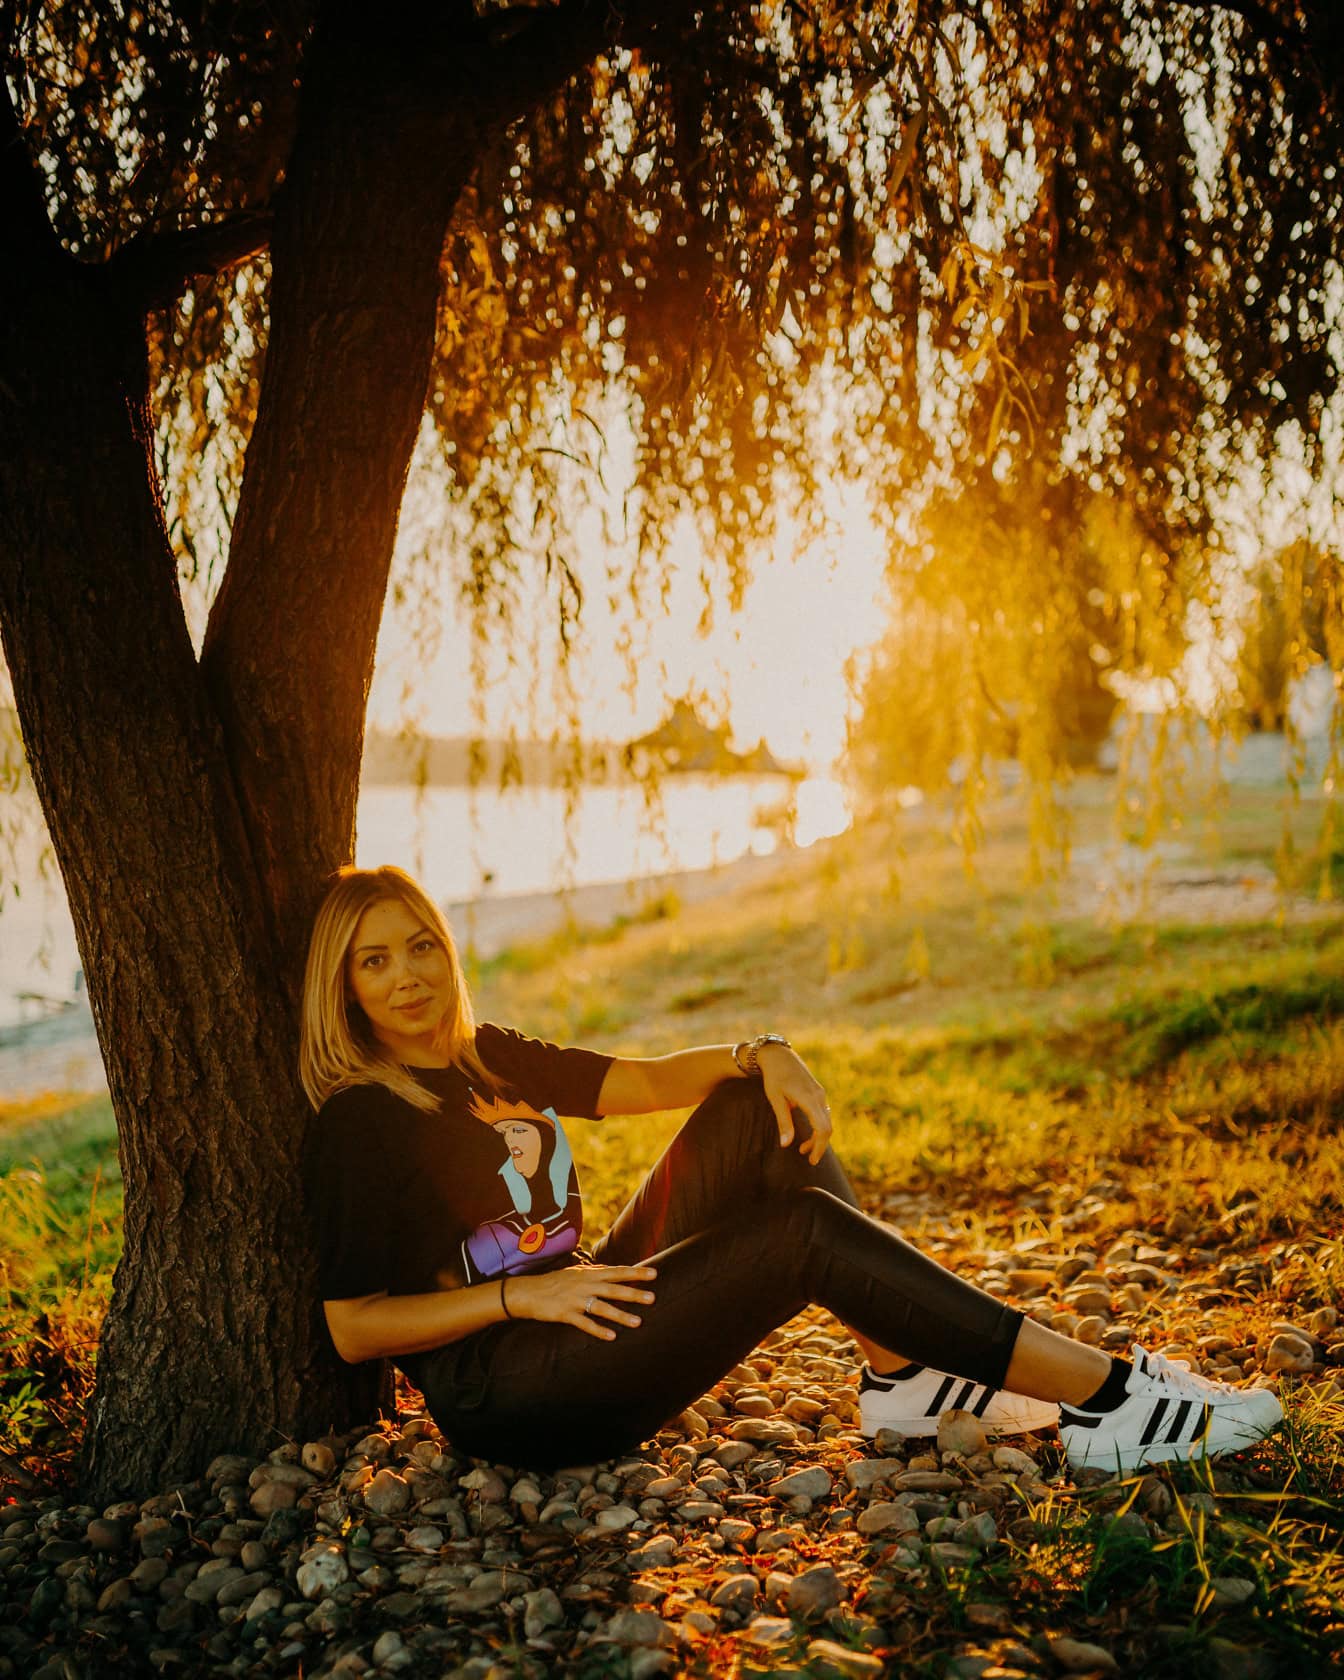 Krásne dospievajúce dievča sedí pod stromom s nádherným západom slnka v pozadí